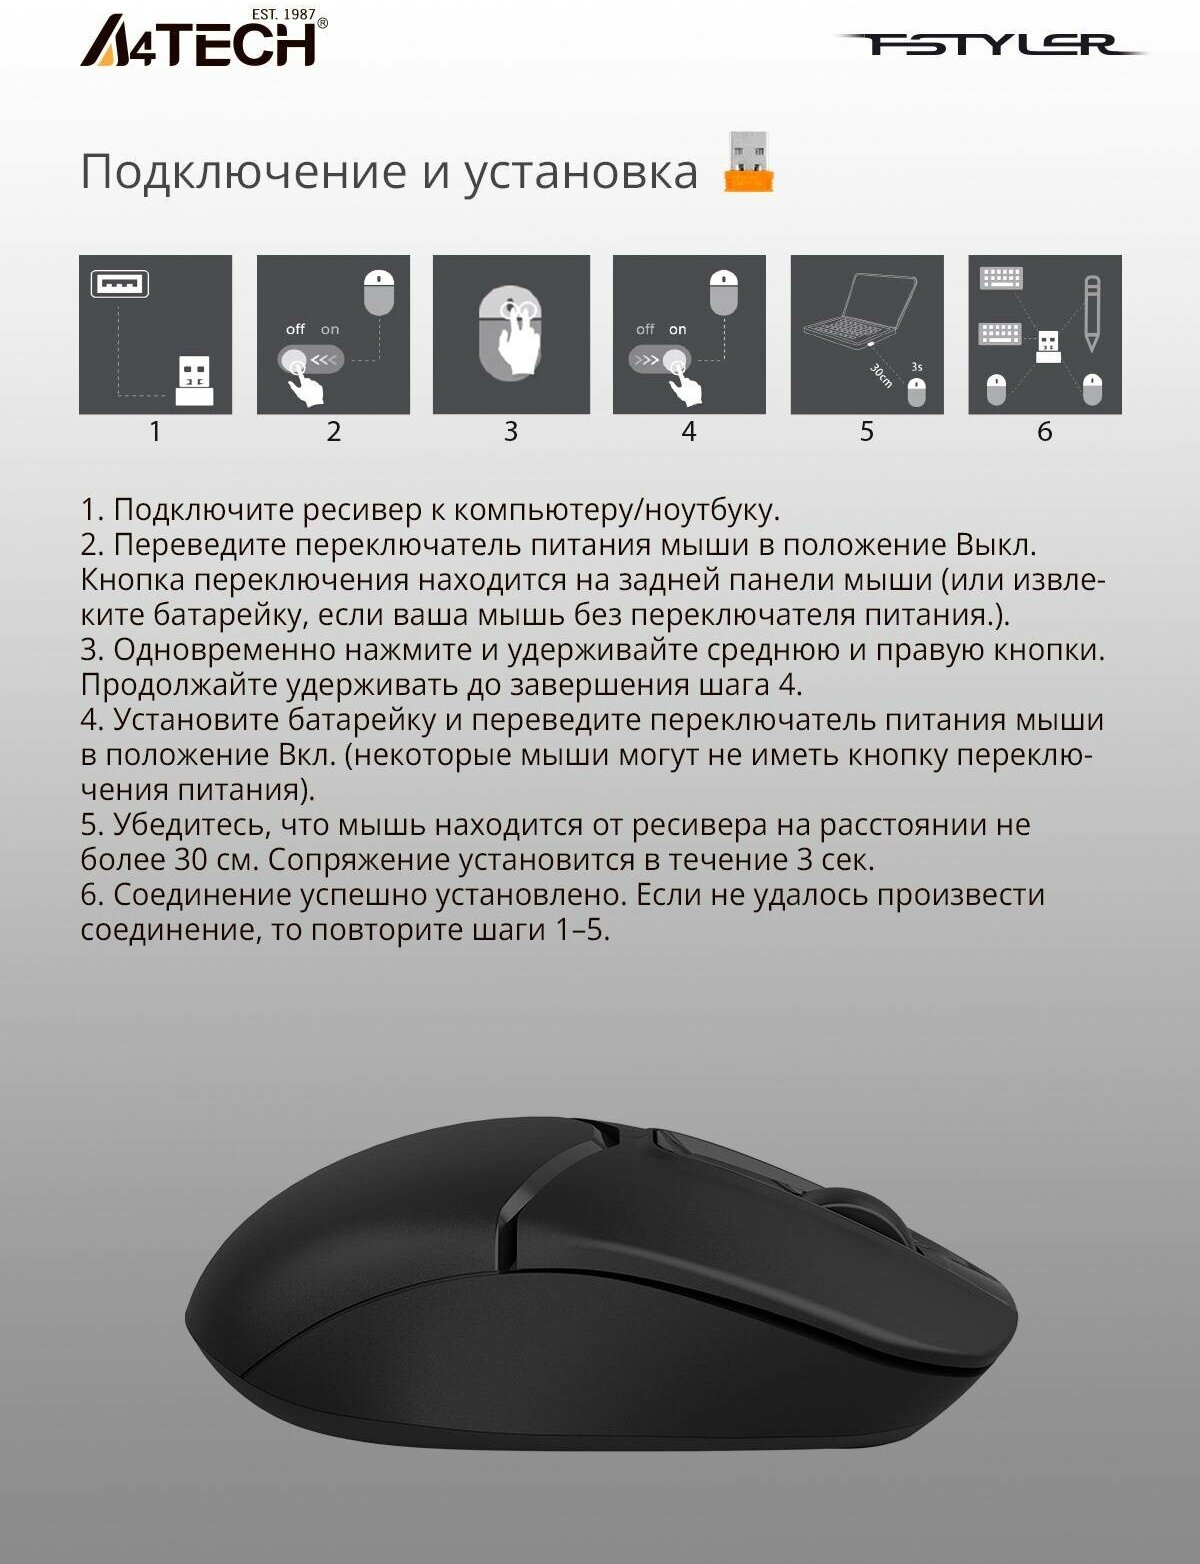 Мышь A4TECH Fstyler FG12S, оптическая, беспроводная, USB, черный [fg12s black] - фотография № 8